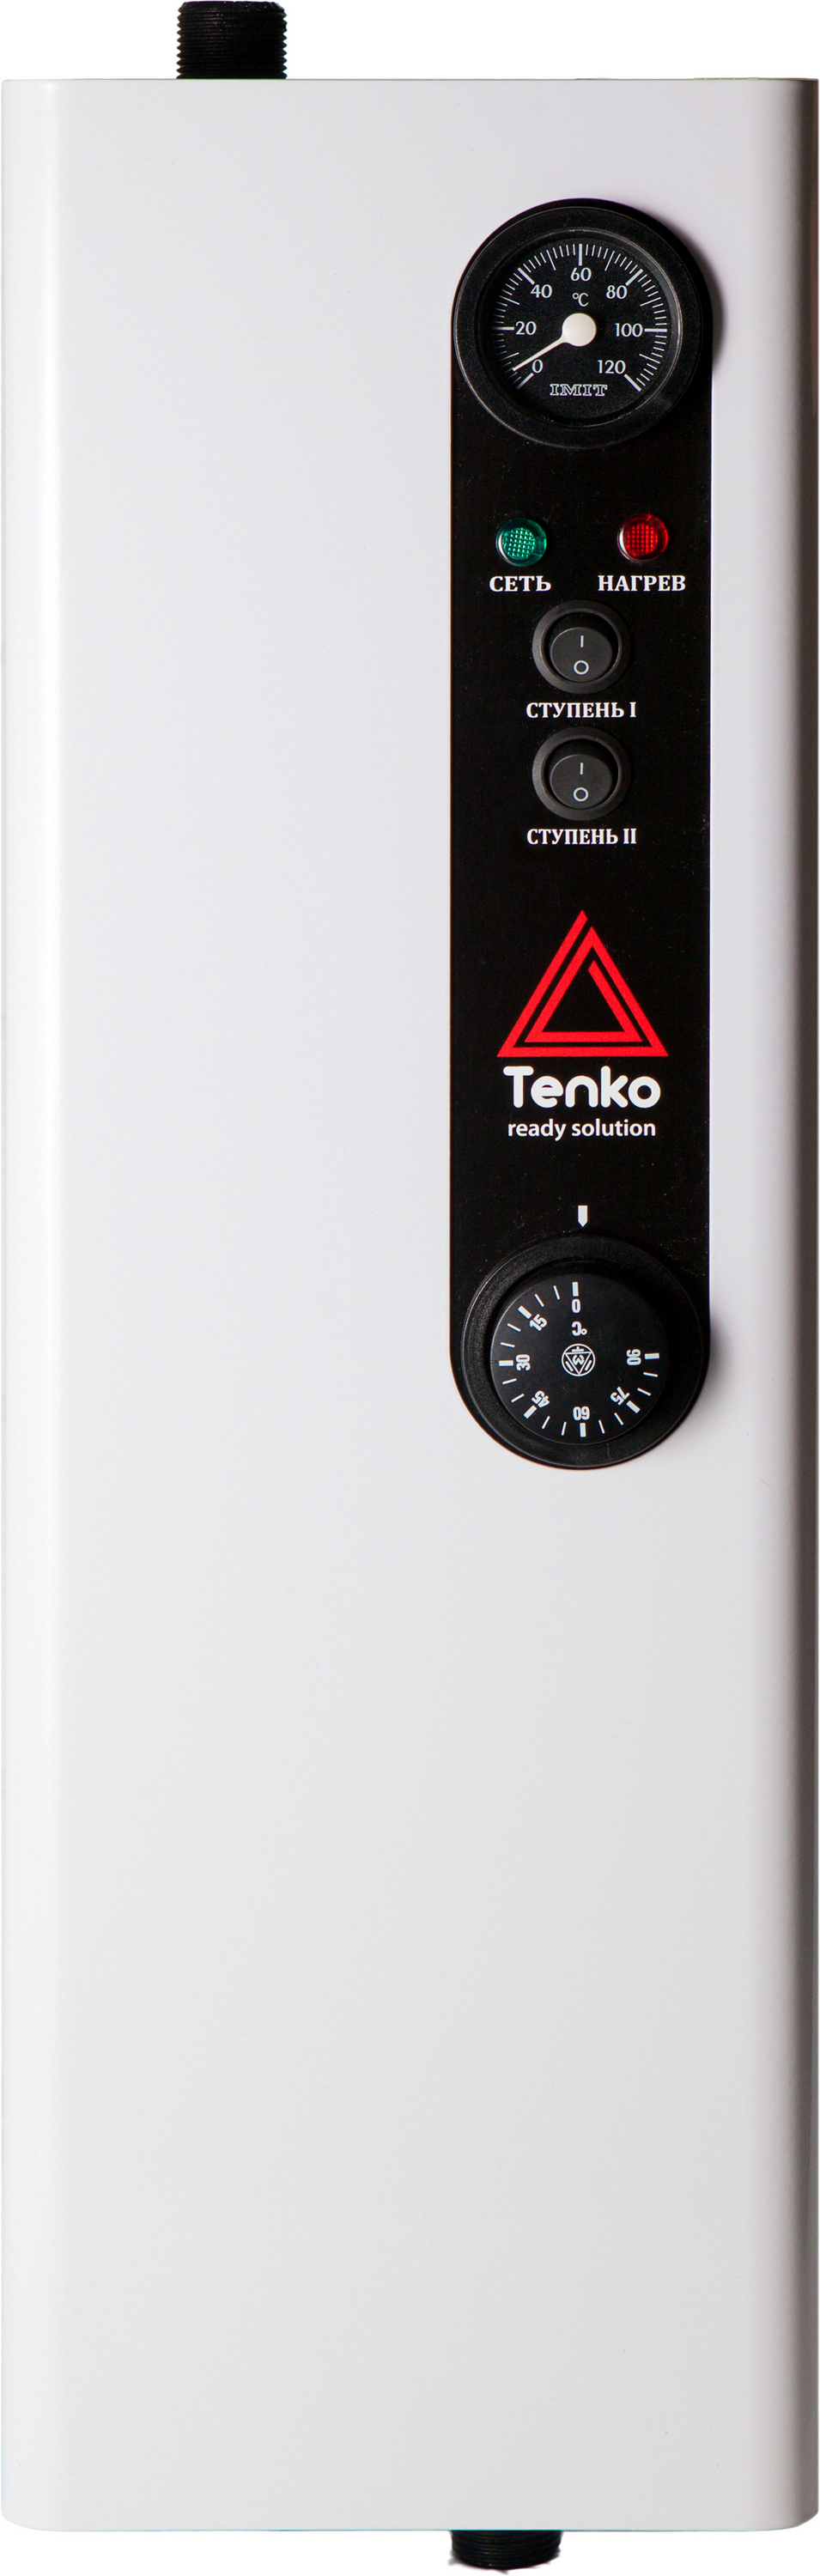 Отзывы электрокотел tenko 30 квт Tenko Эконом 30 380 в Украине